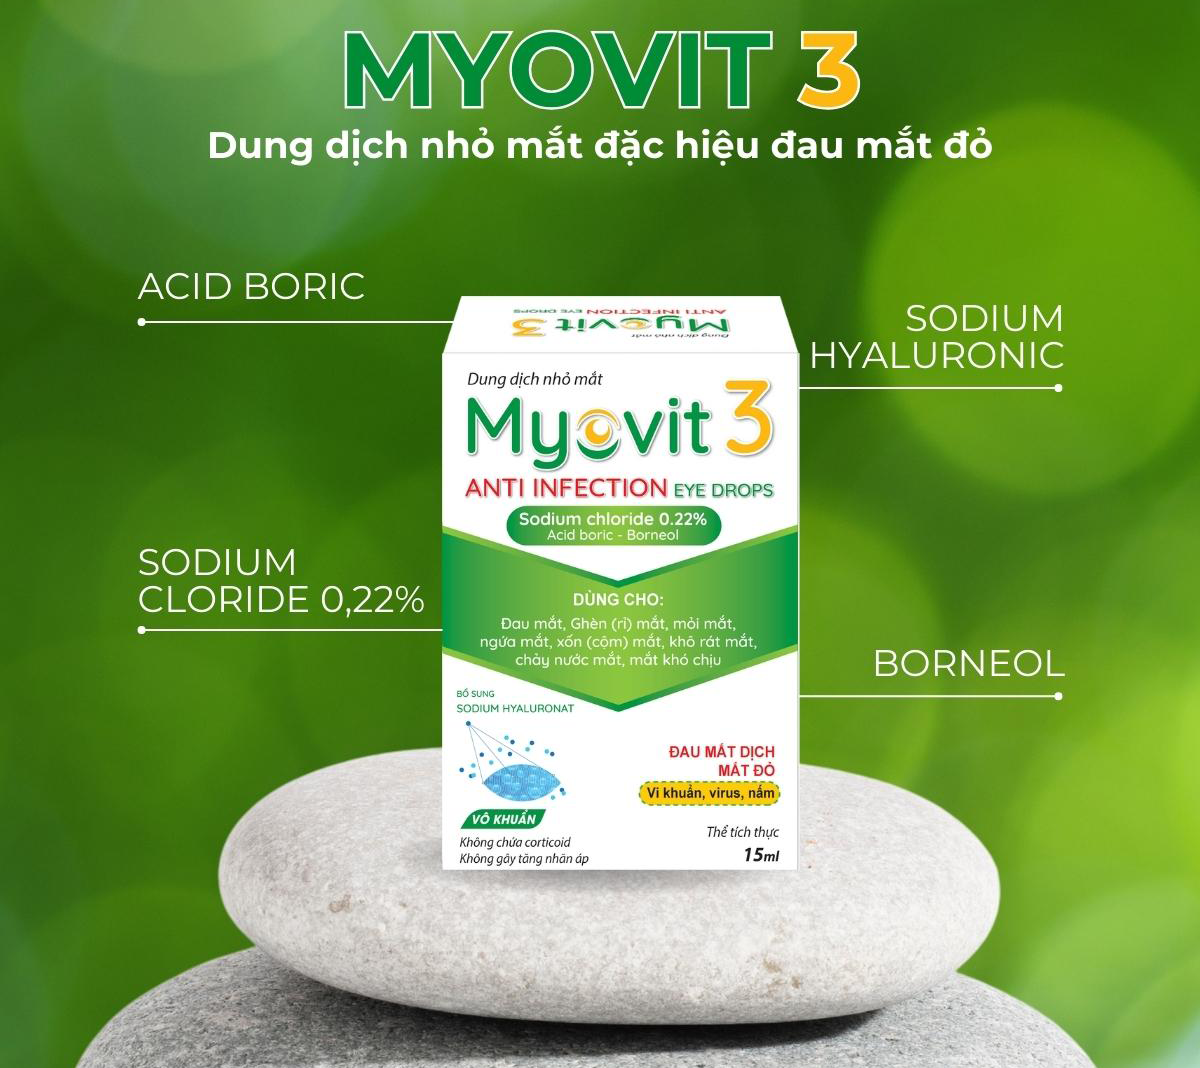 Thành phần của dung dịch nhỏ mắt Myovit 3